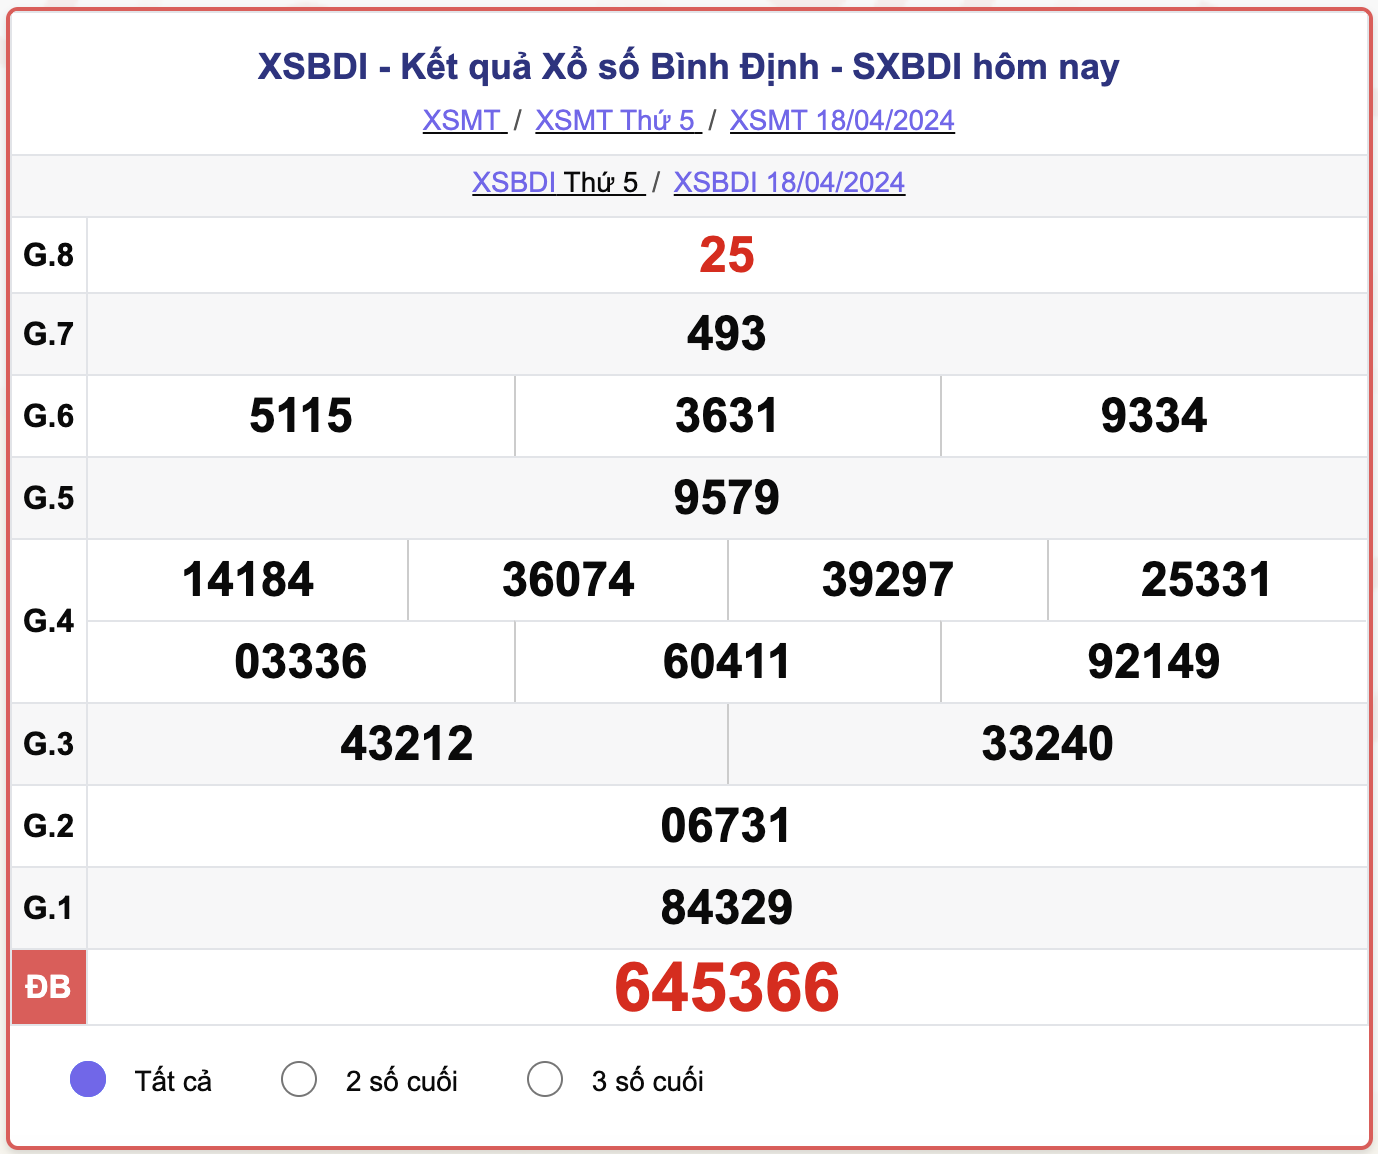 XSBDI thứ 5, kết quả xổ số Bình Định ngày 18/4/2024.